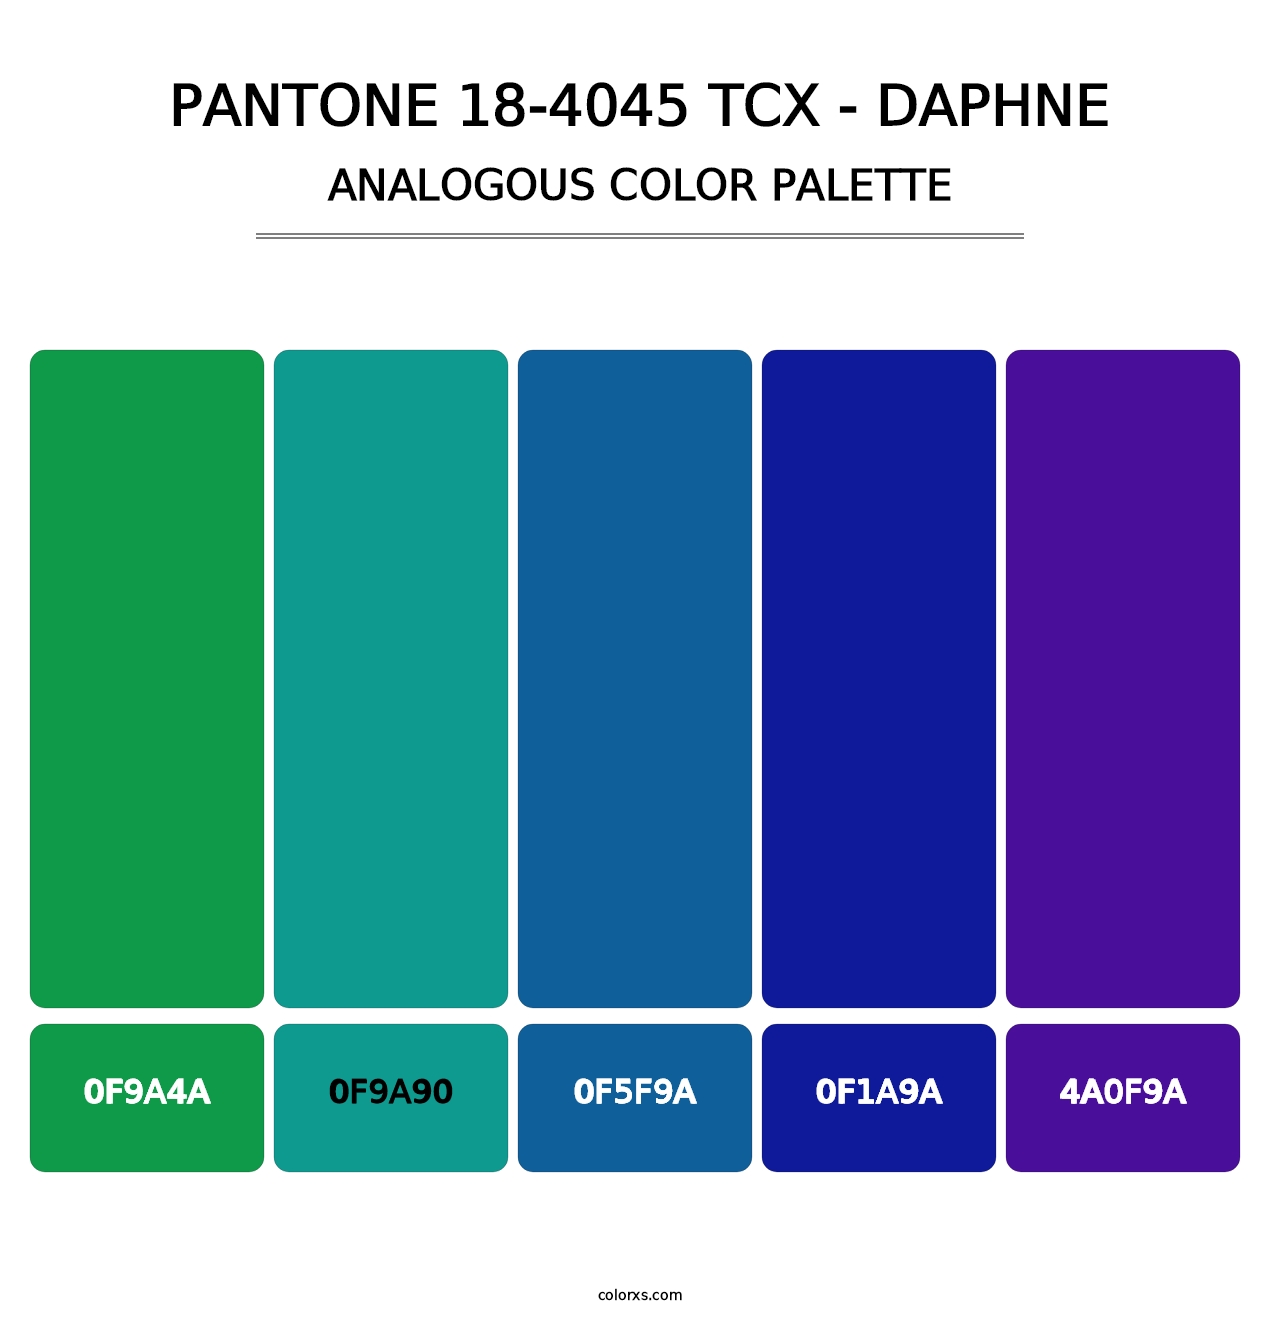 PANTONE 18-4045 TCX - Daphne - Analogous Color Palette